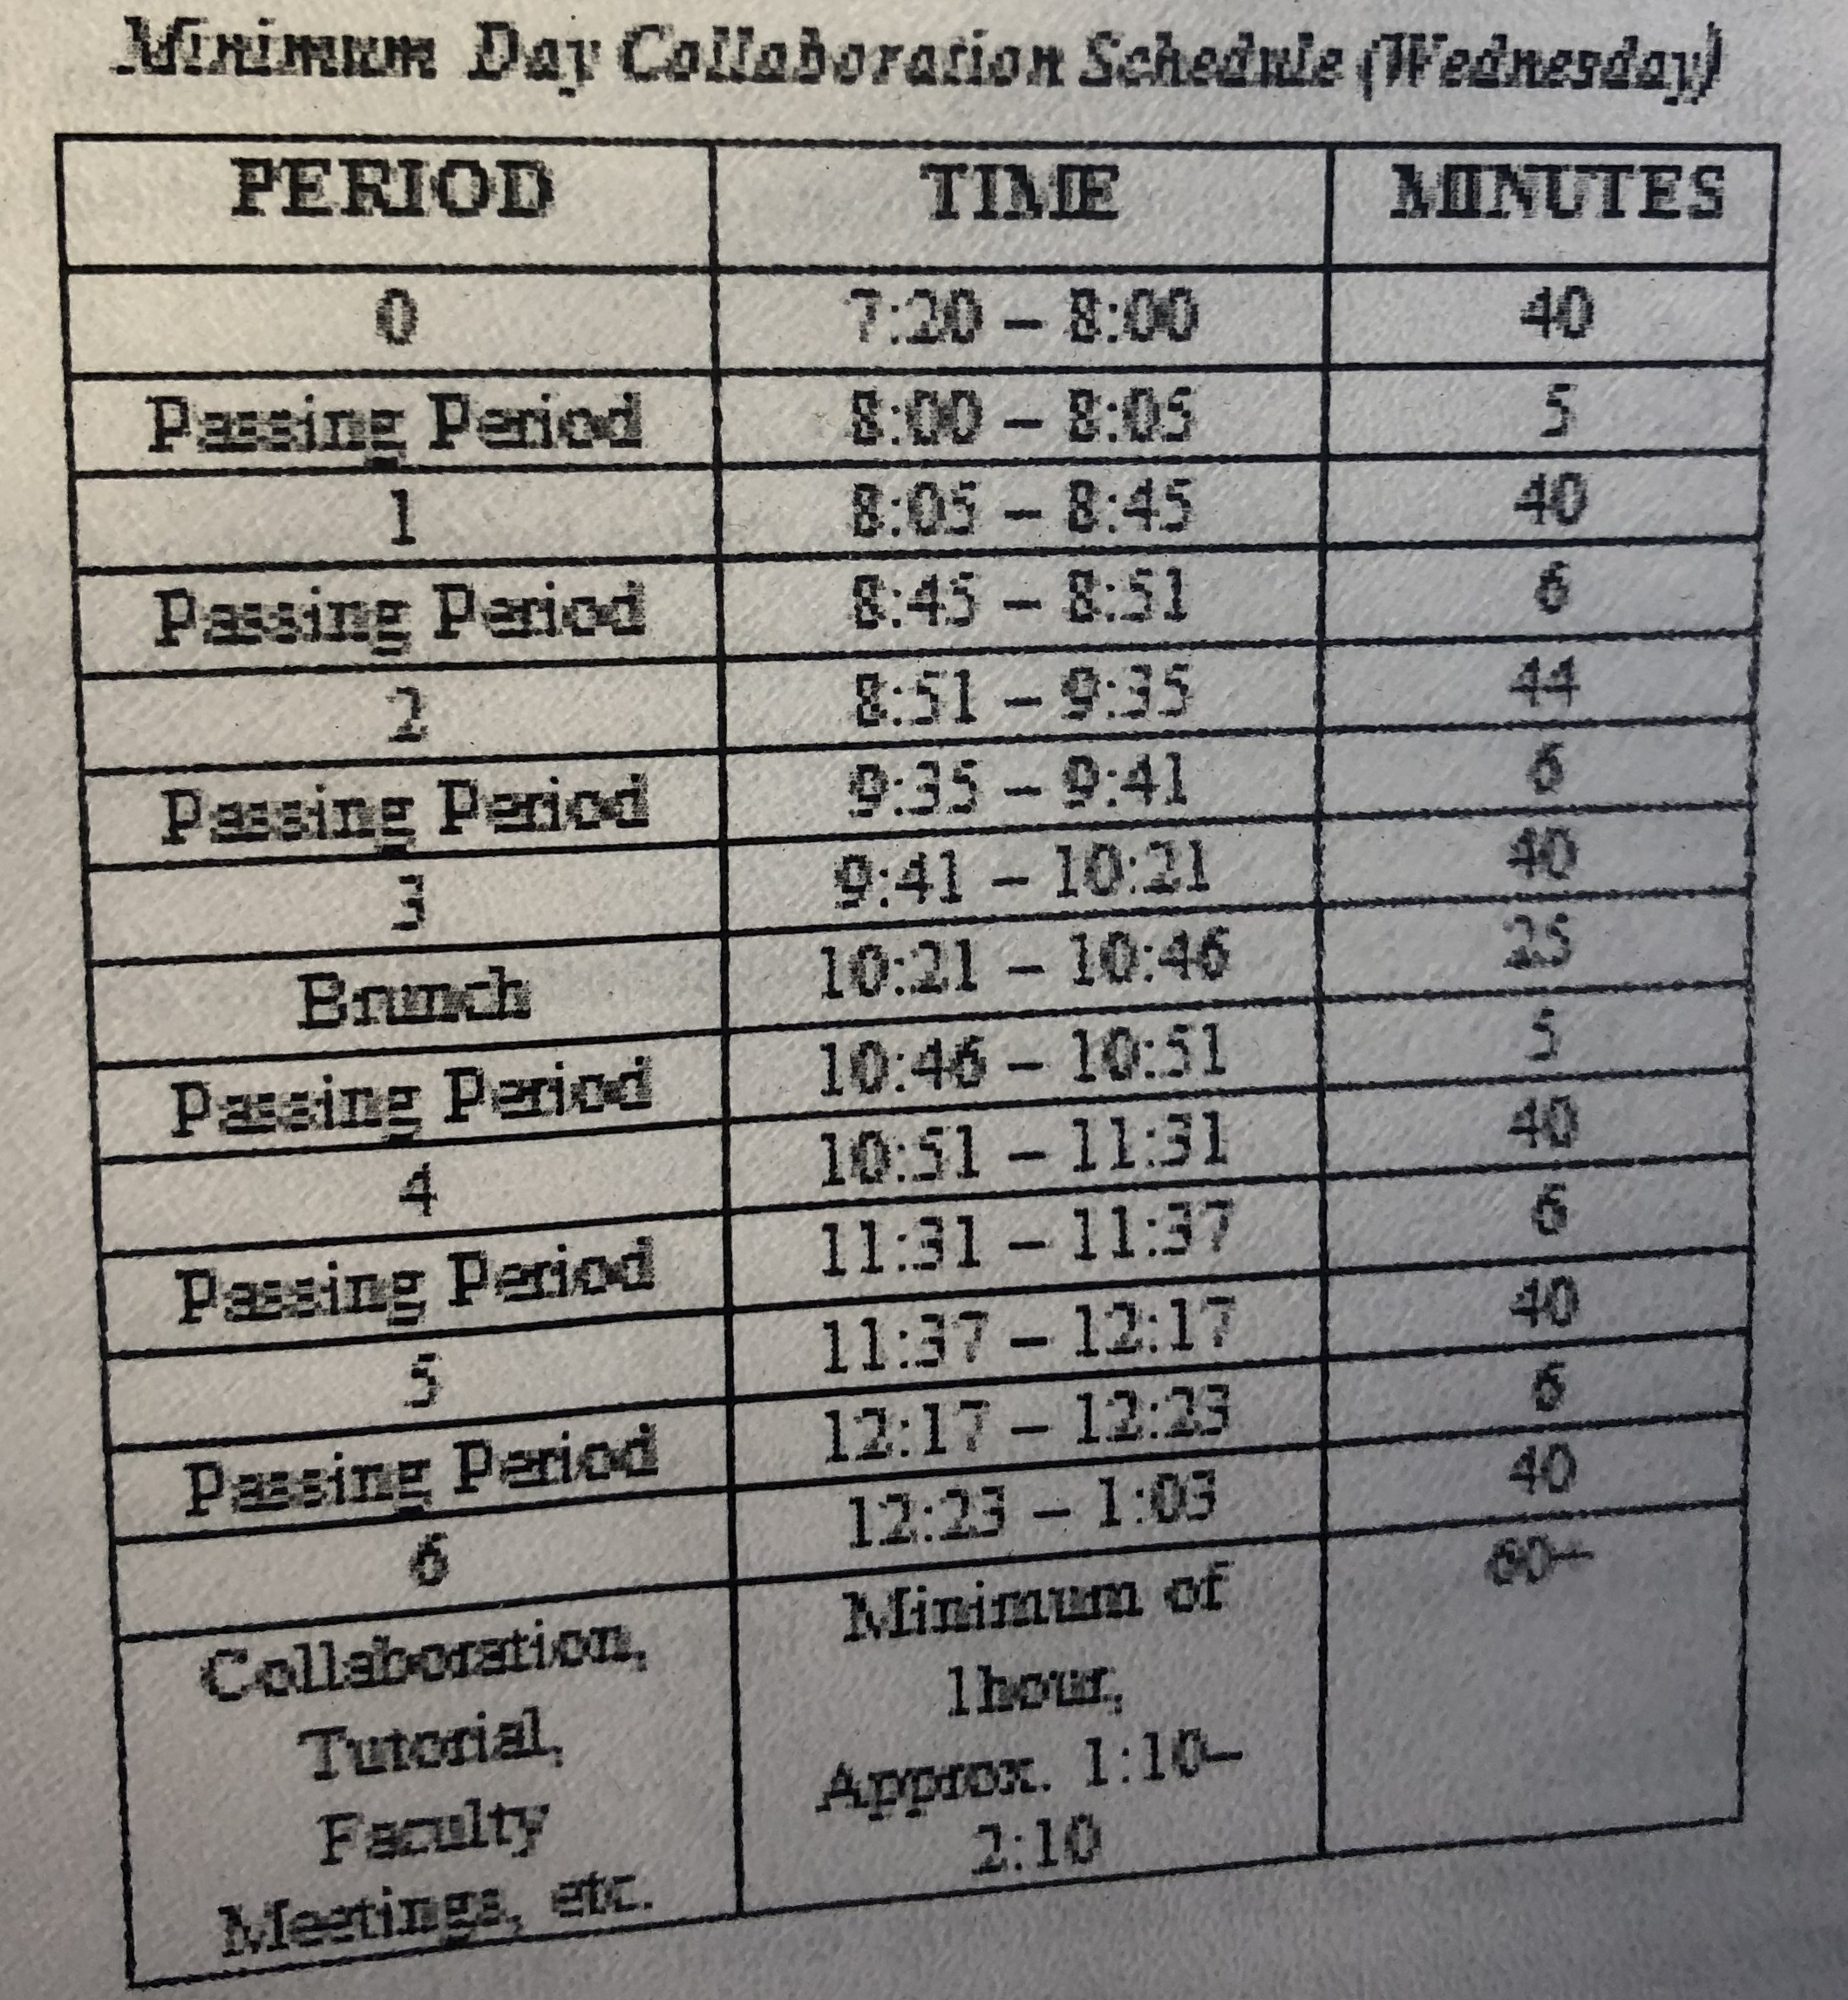 Minimum Day bell schedule.jpg